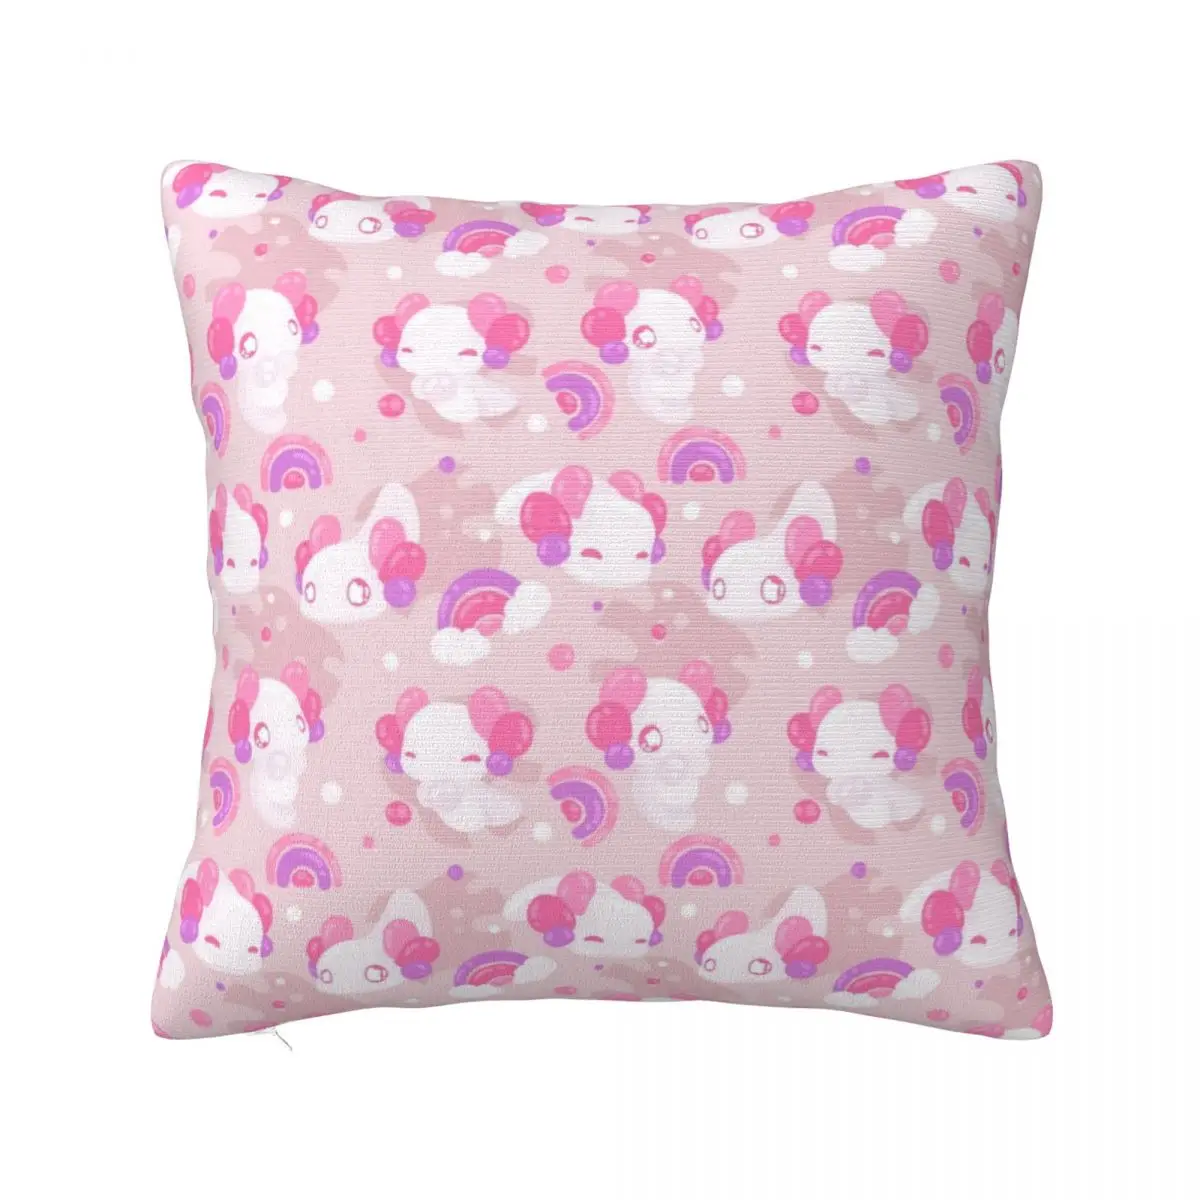 

Kawaii Axolotls от Evy Benita, наволочка с принтом, искусственная розовая, эстетичная, милая мультяшная подушка, чехол для дома, 45 см